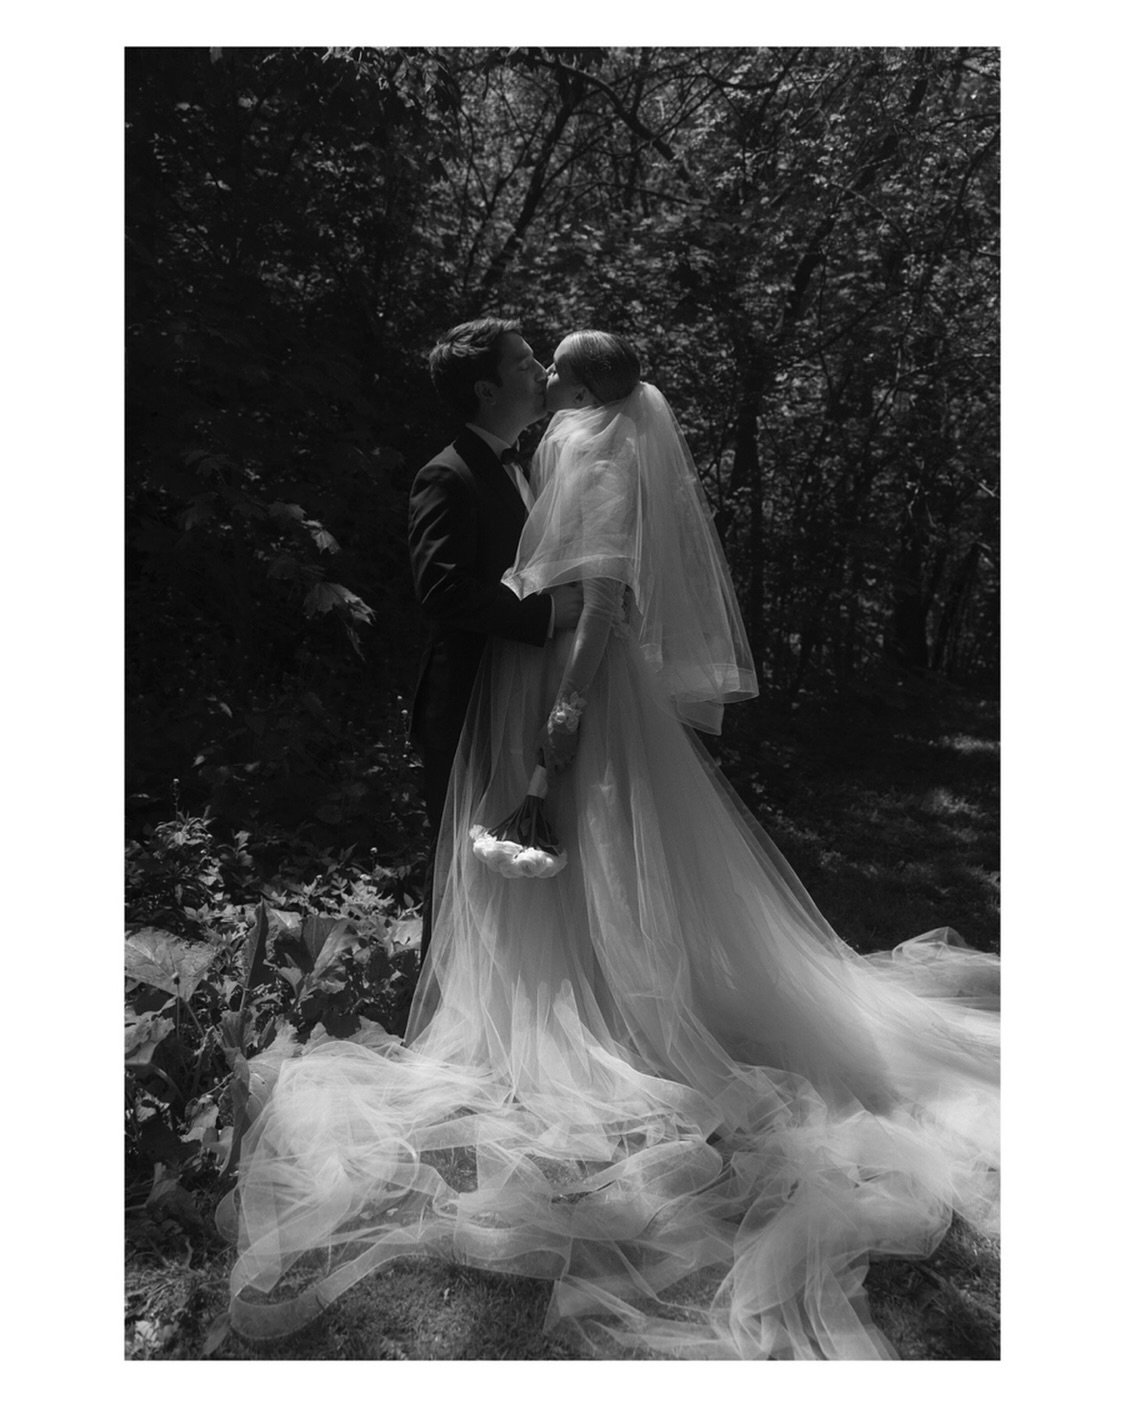 The more tulle the better 🌹
.
.
#weddingdress #tulle #bride #weddingday #torontophotographer #luxurywedding #weddingphotography